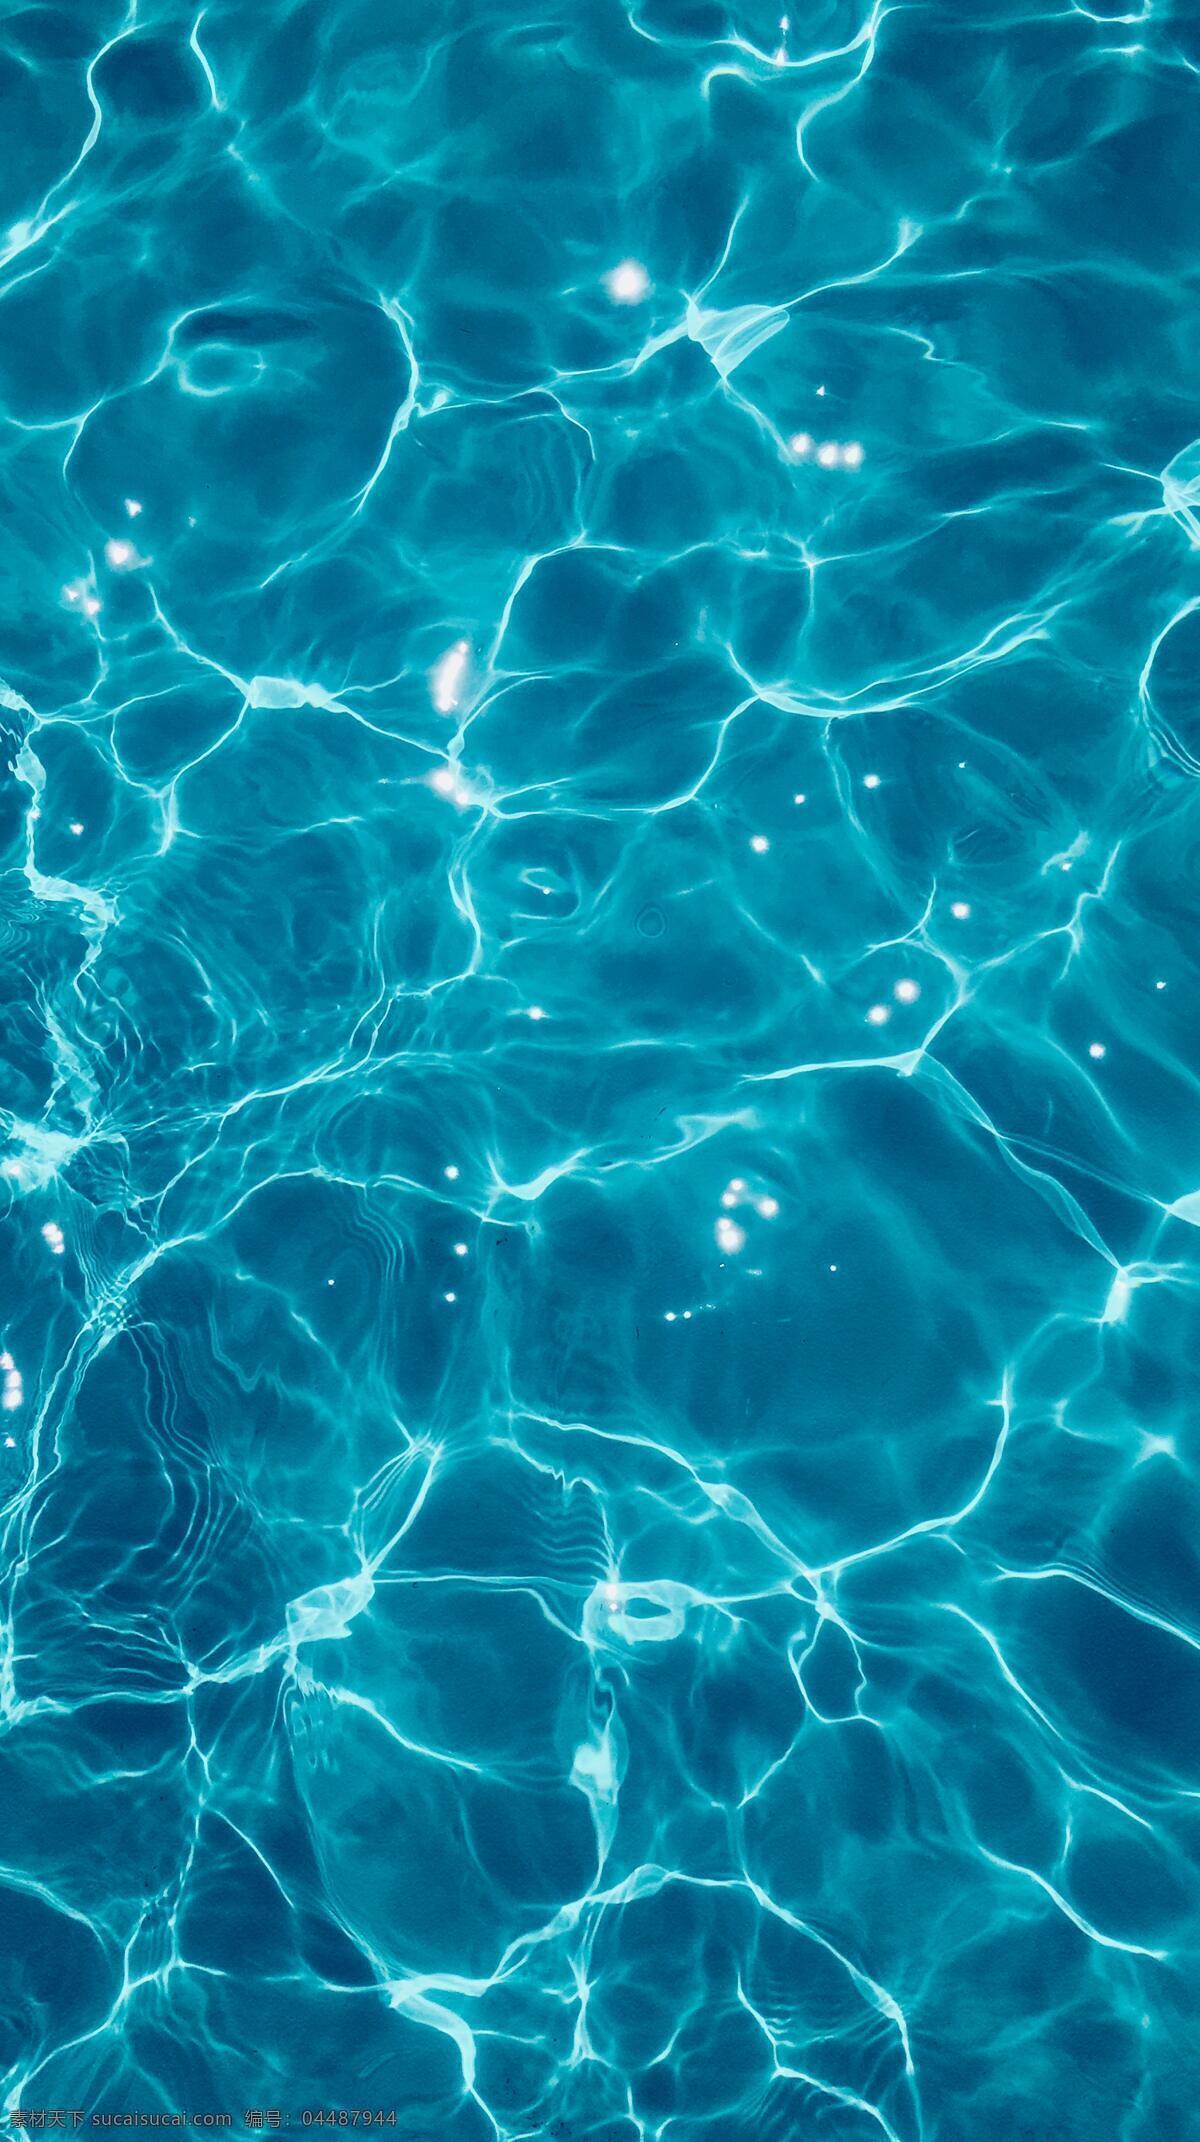 蓝蓝的水 游泳池的水 深蓝的水 清淤的水 水光 水波纹